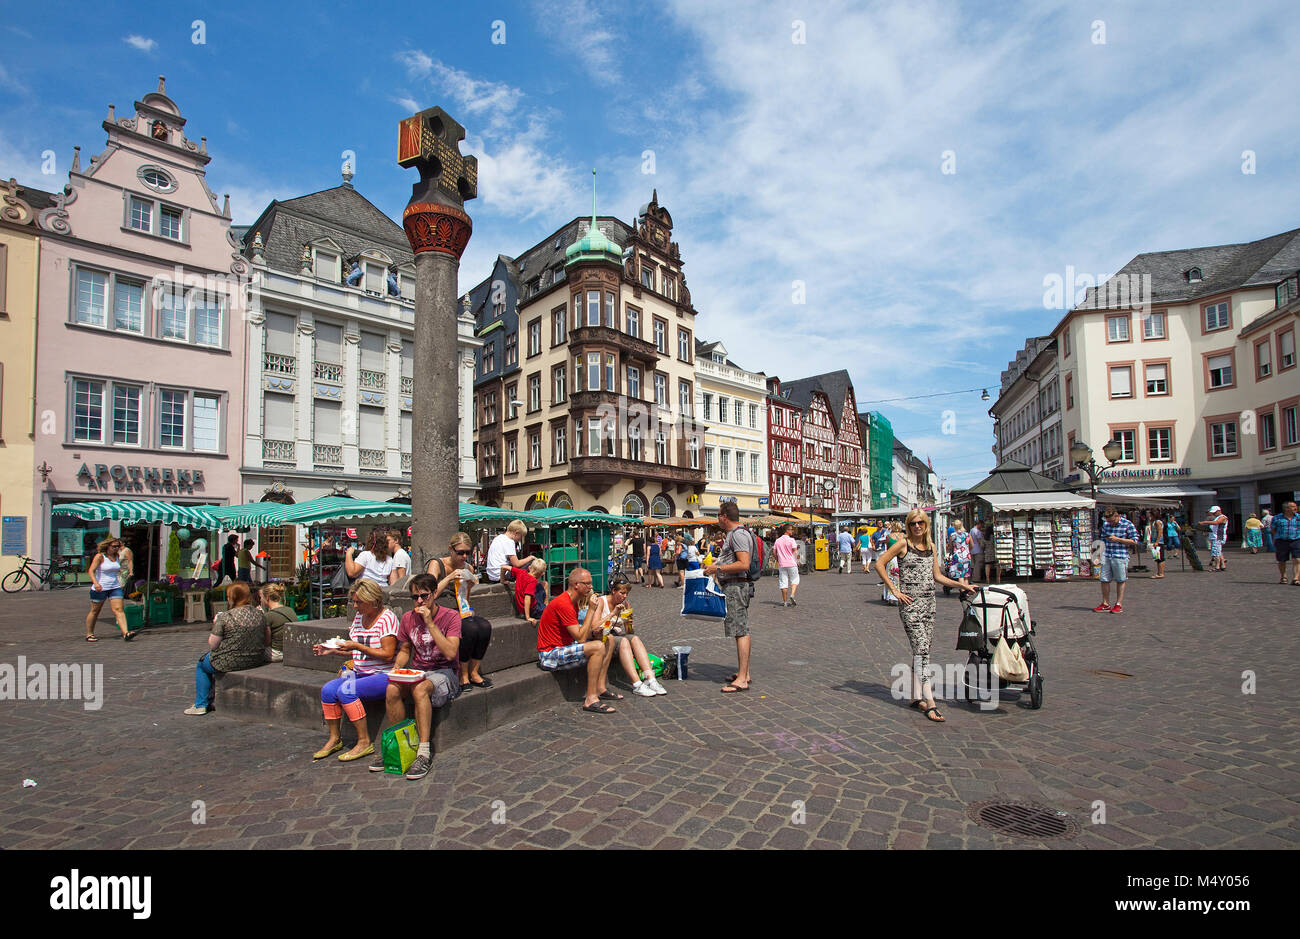 La vida de la ciudad en el principal mercado, mercado cruz, Trier, Renania-Palatinado, Alemania, Europa Foto de stock